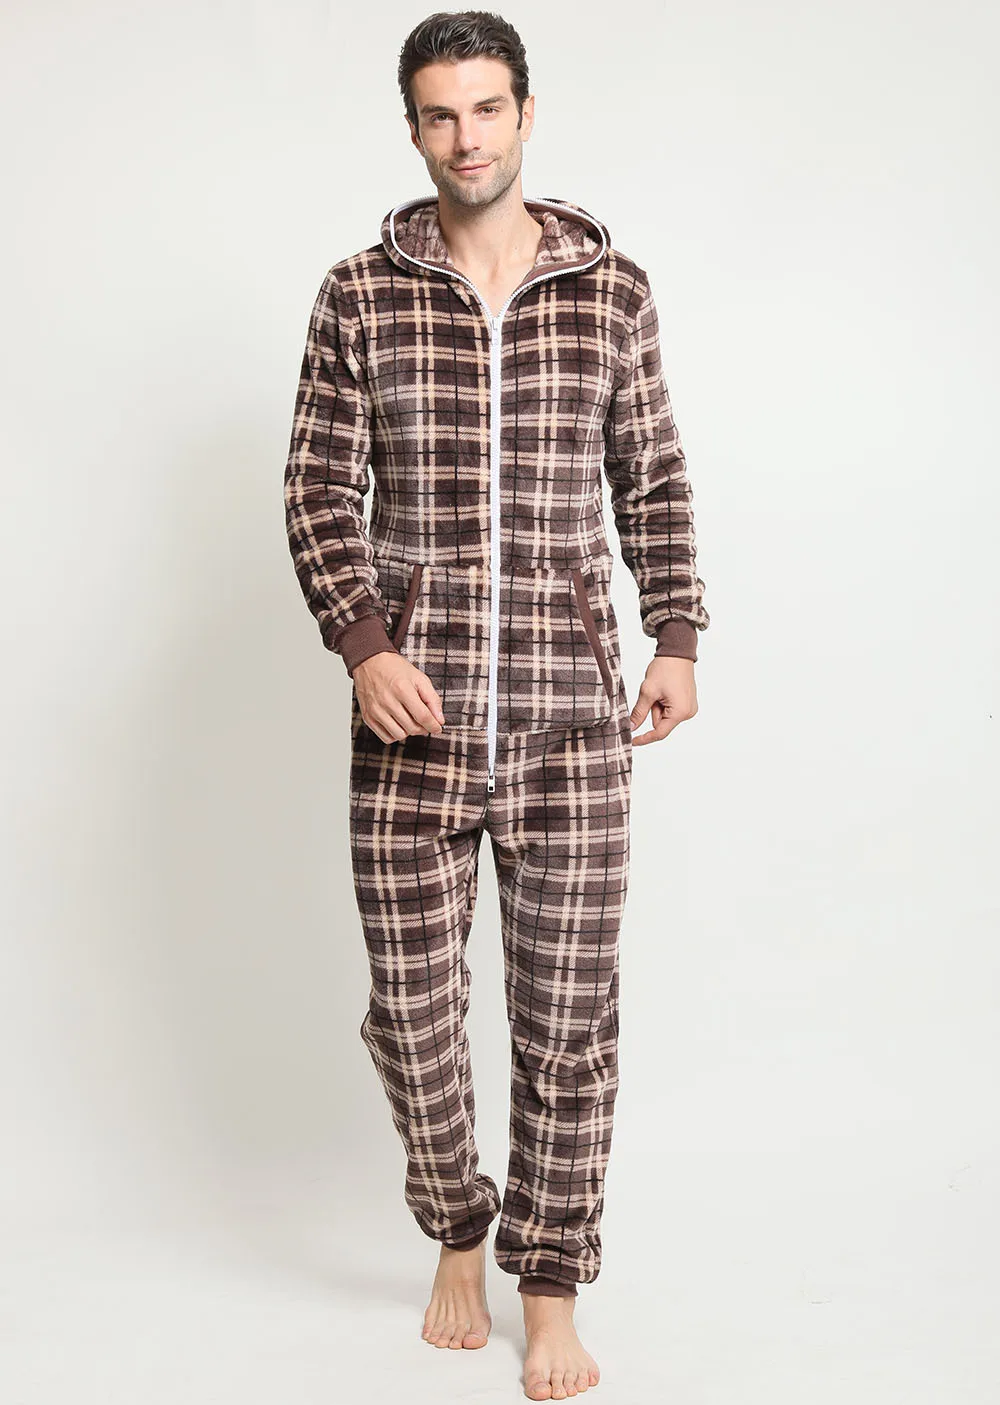 Winter Herren dicke karierte Flanell einteilig einteilig zu Hause Trage Overall Kühle Sommer Casual Bekleidung Männer Pyjamas